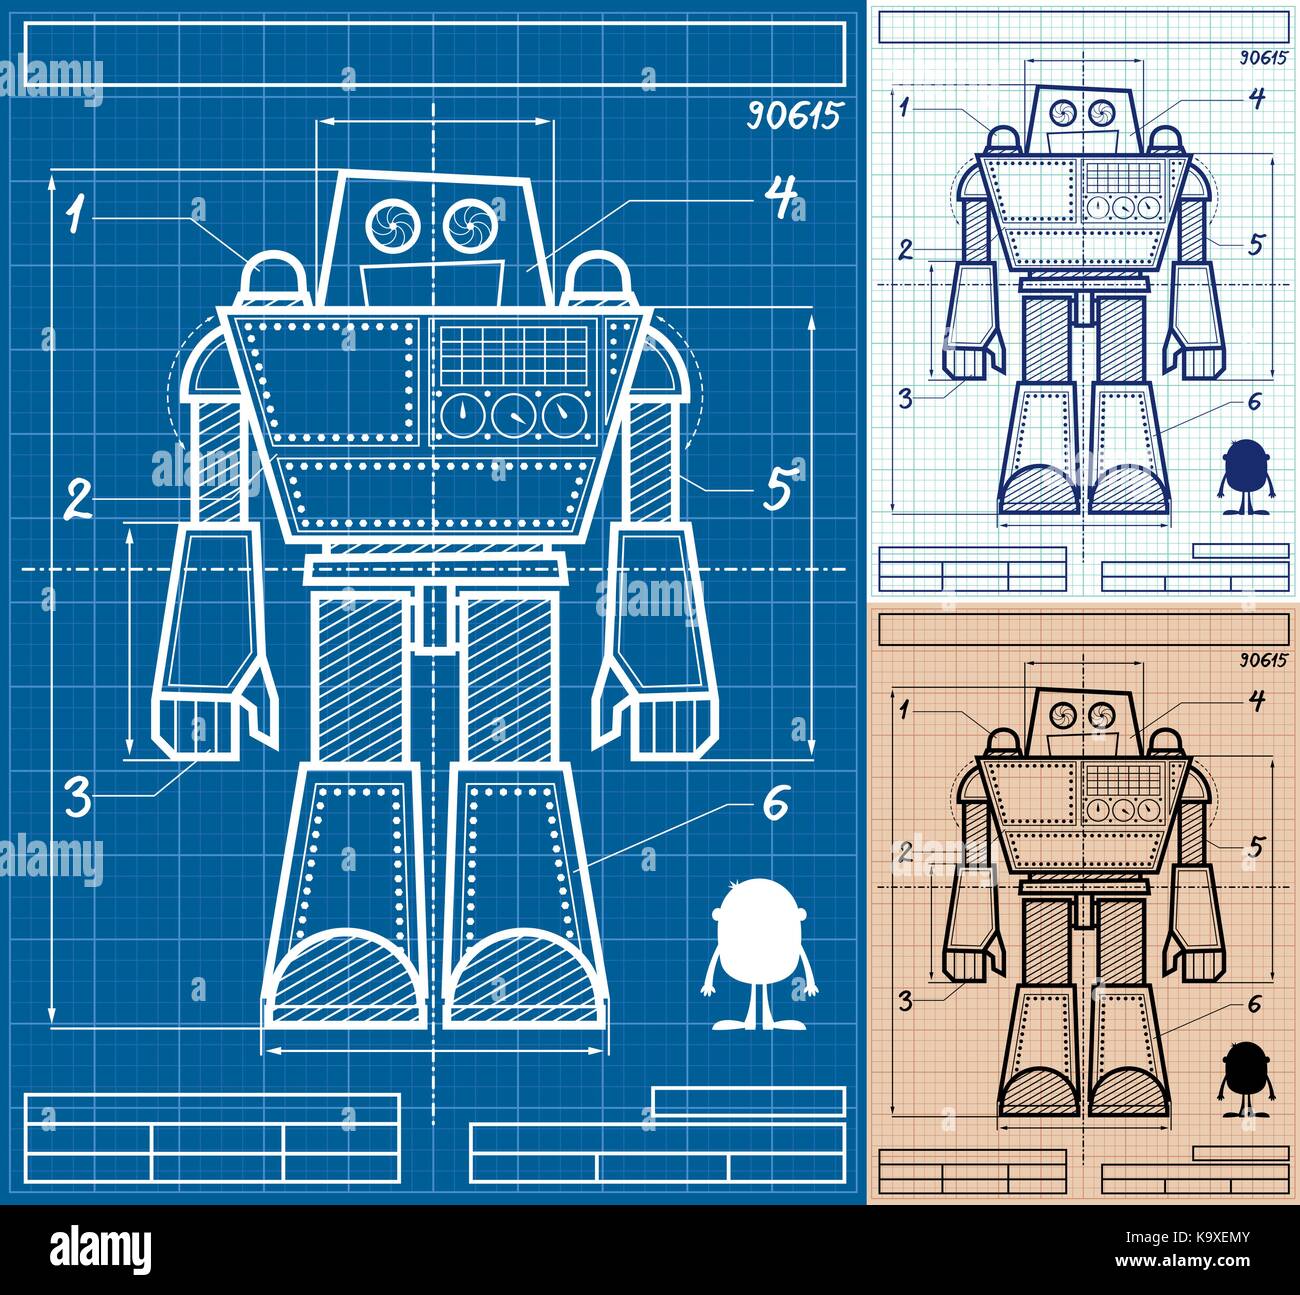 Plan de dessin animé robot géant en 3 versions. Illustration de Vecteur